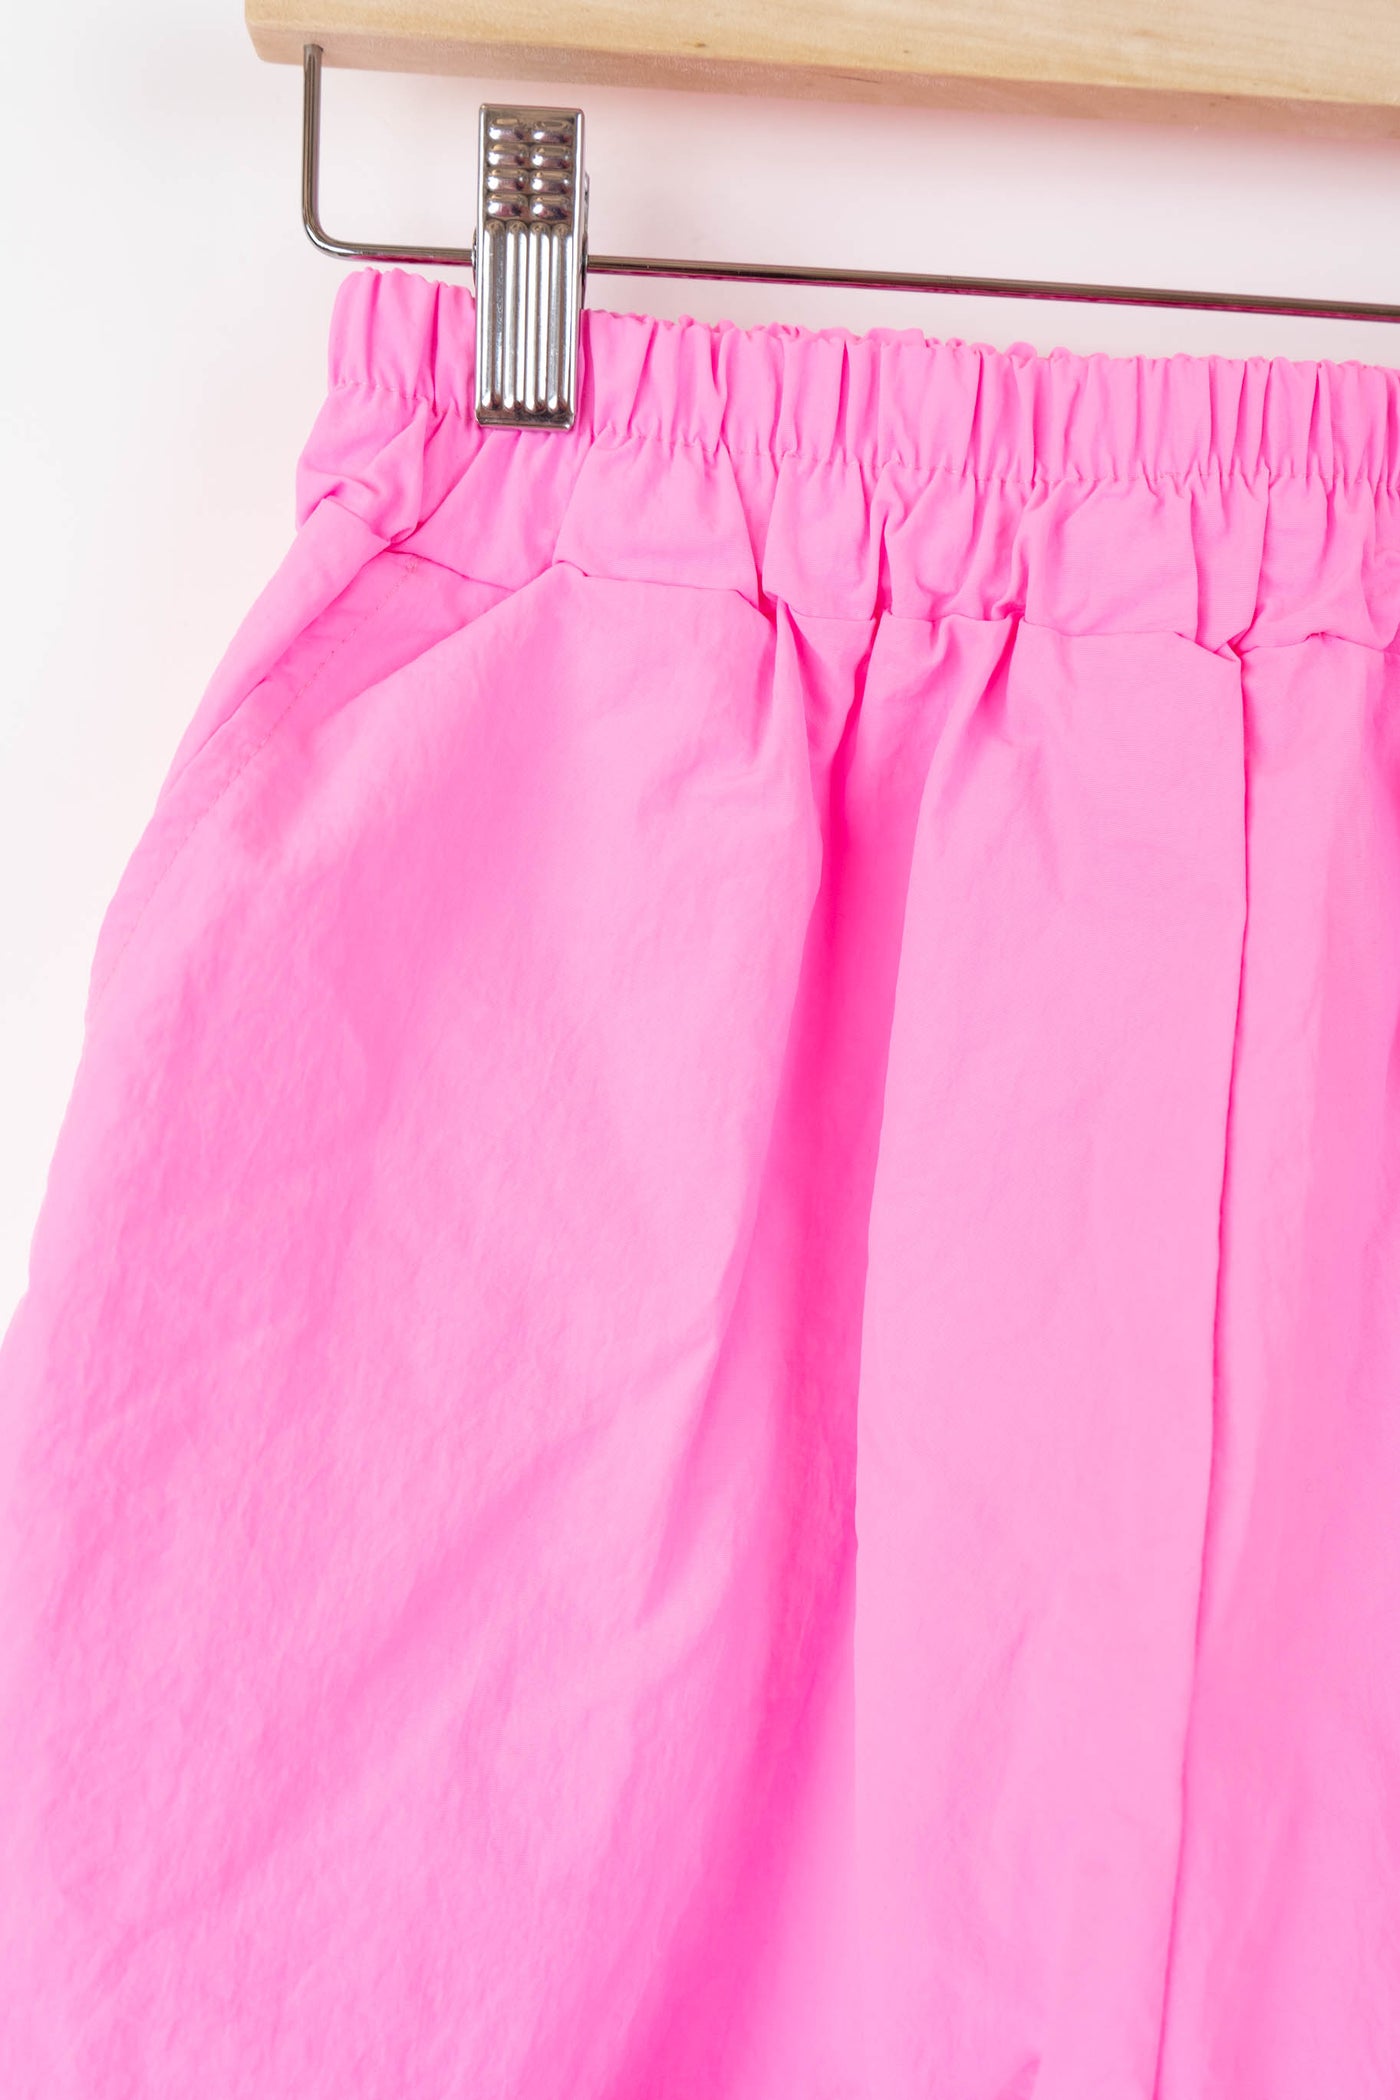 Conjunto top y pantalón rosa neón